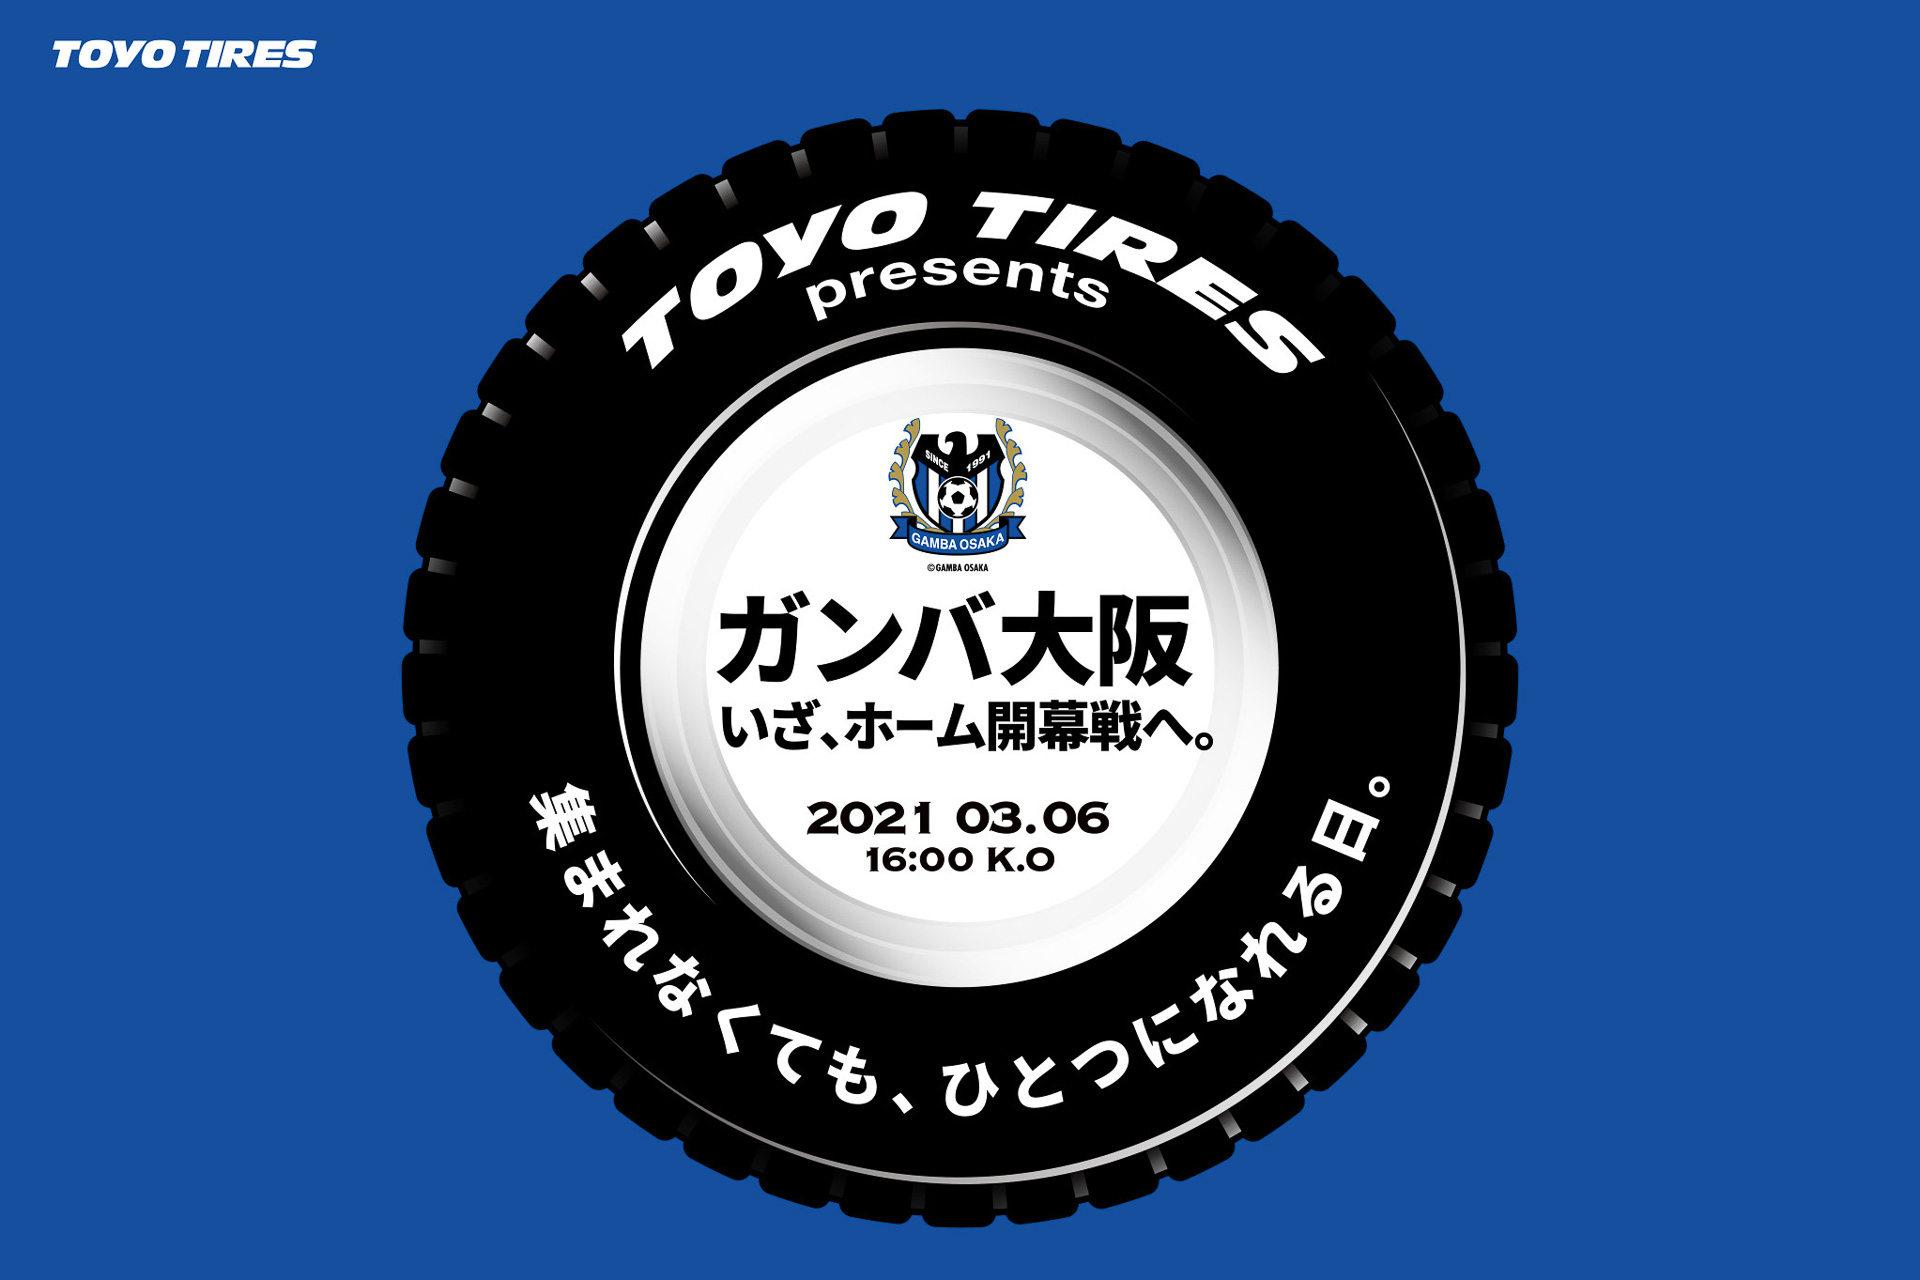 Toyo Tire サッカーj1リーグチーム ガンバ大阪のホーム初戦を Toyo Tiresパートナーデー として開催 Car Watch